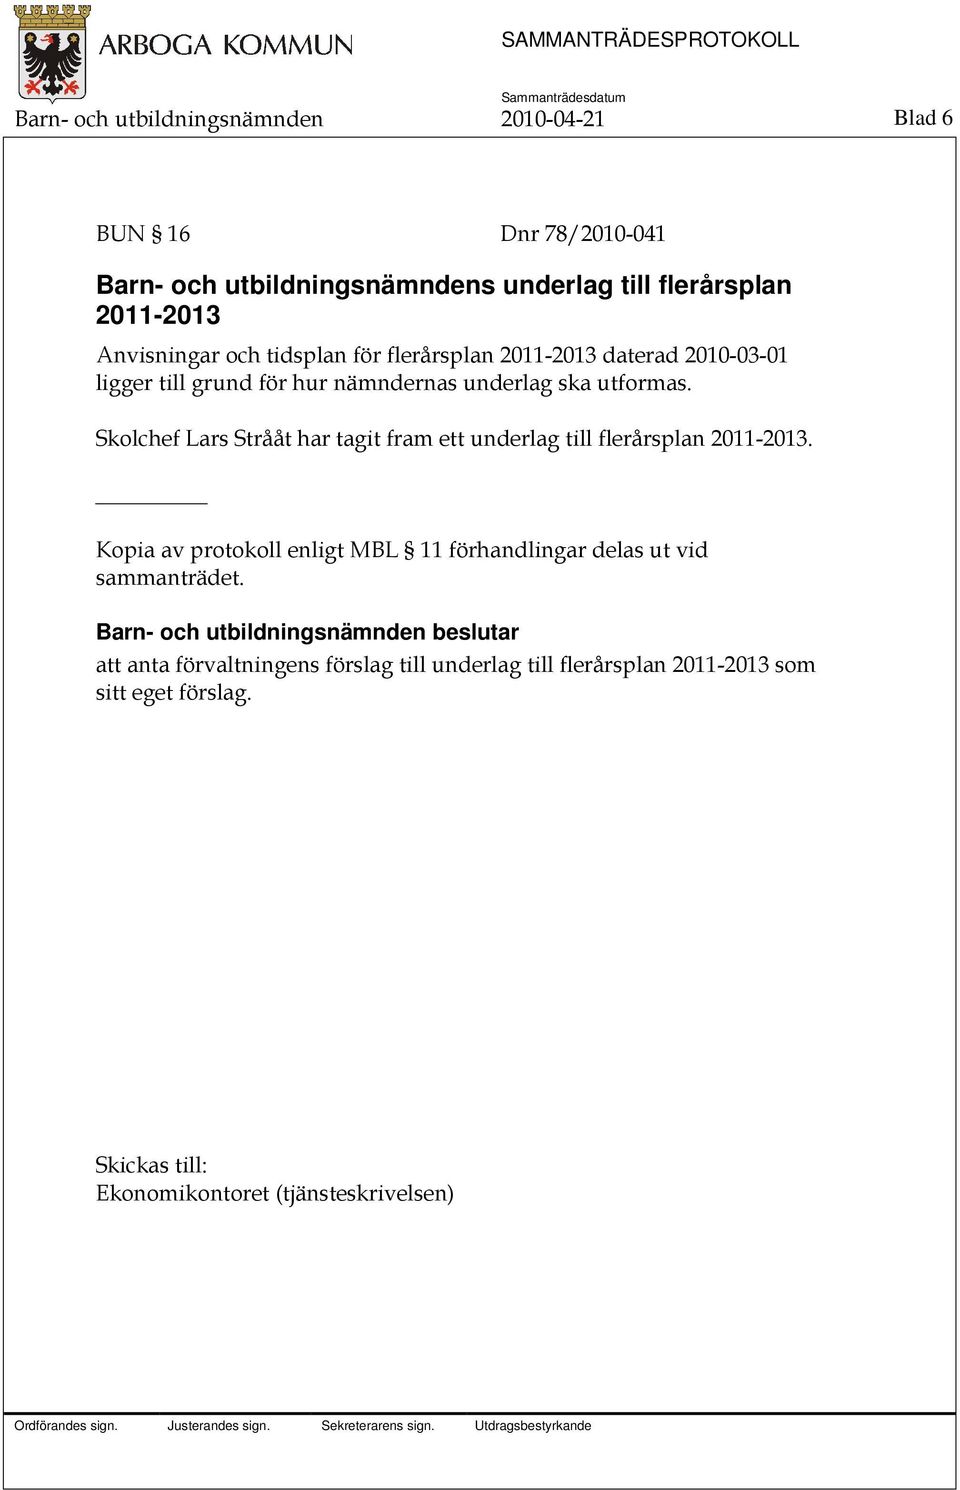 Skolchef Lars Strååt har tagit fram ett underlag till flerårsplan 2011-2013.